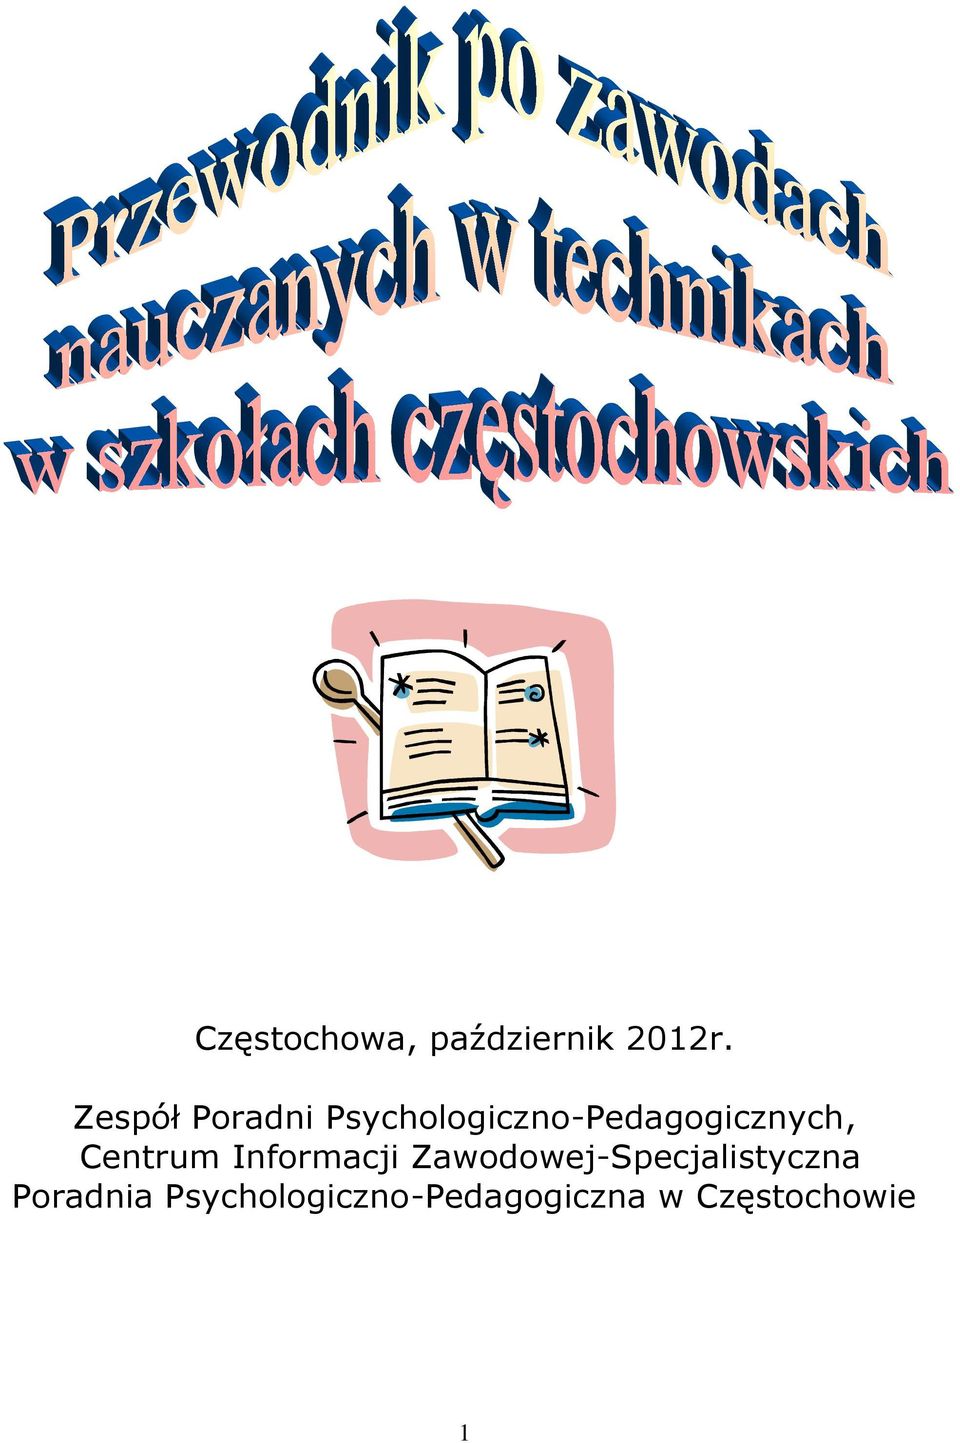 Psychologiczno-Pedagogicznych, Centrum